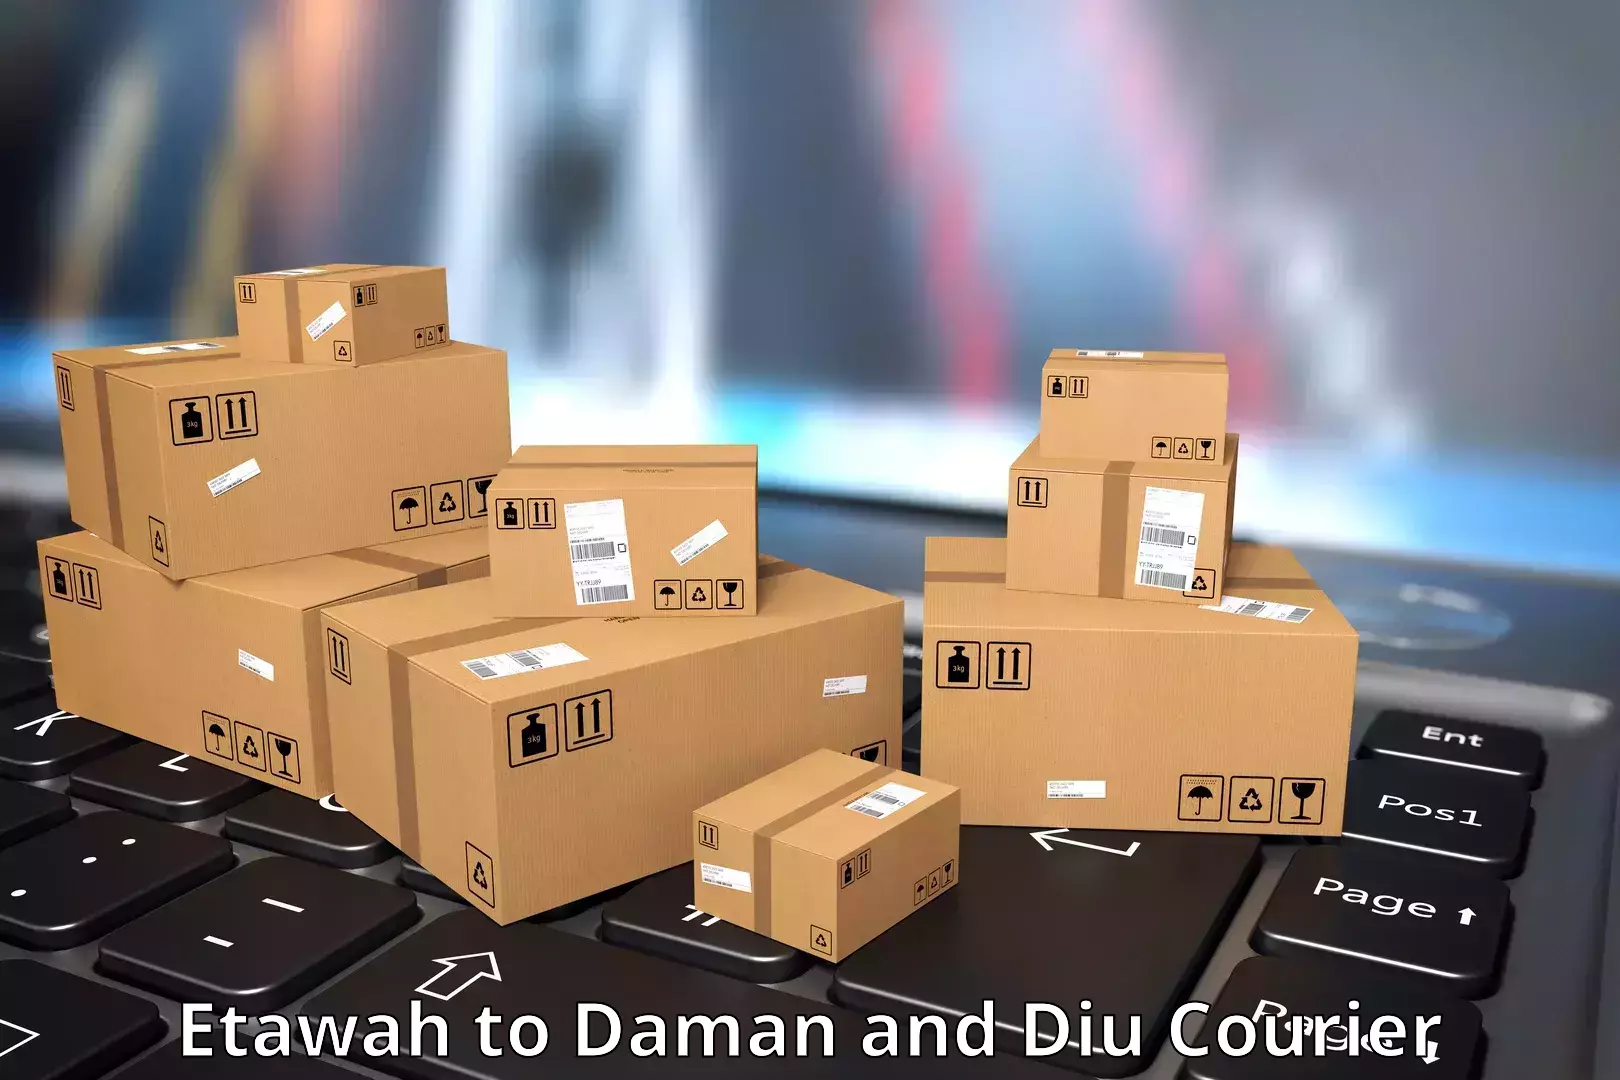 Courier service innovation Etawah to Daman and Diu